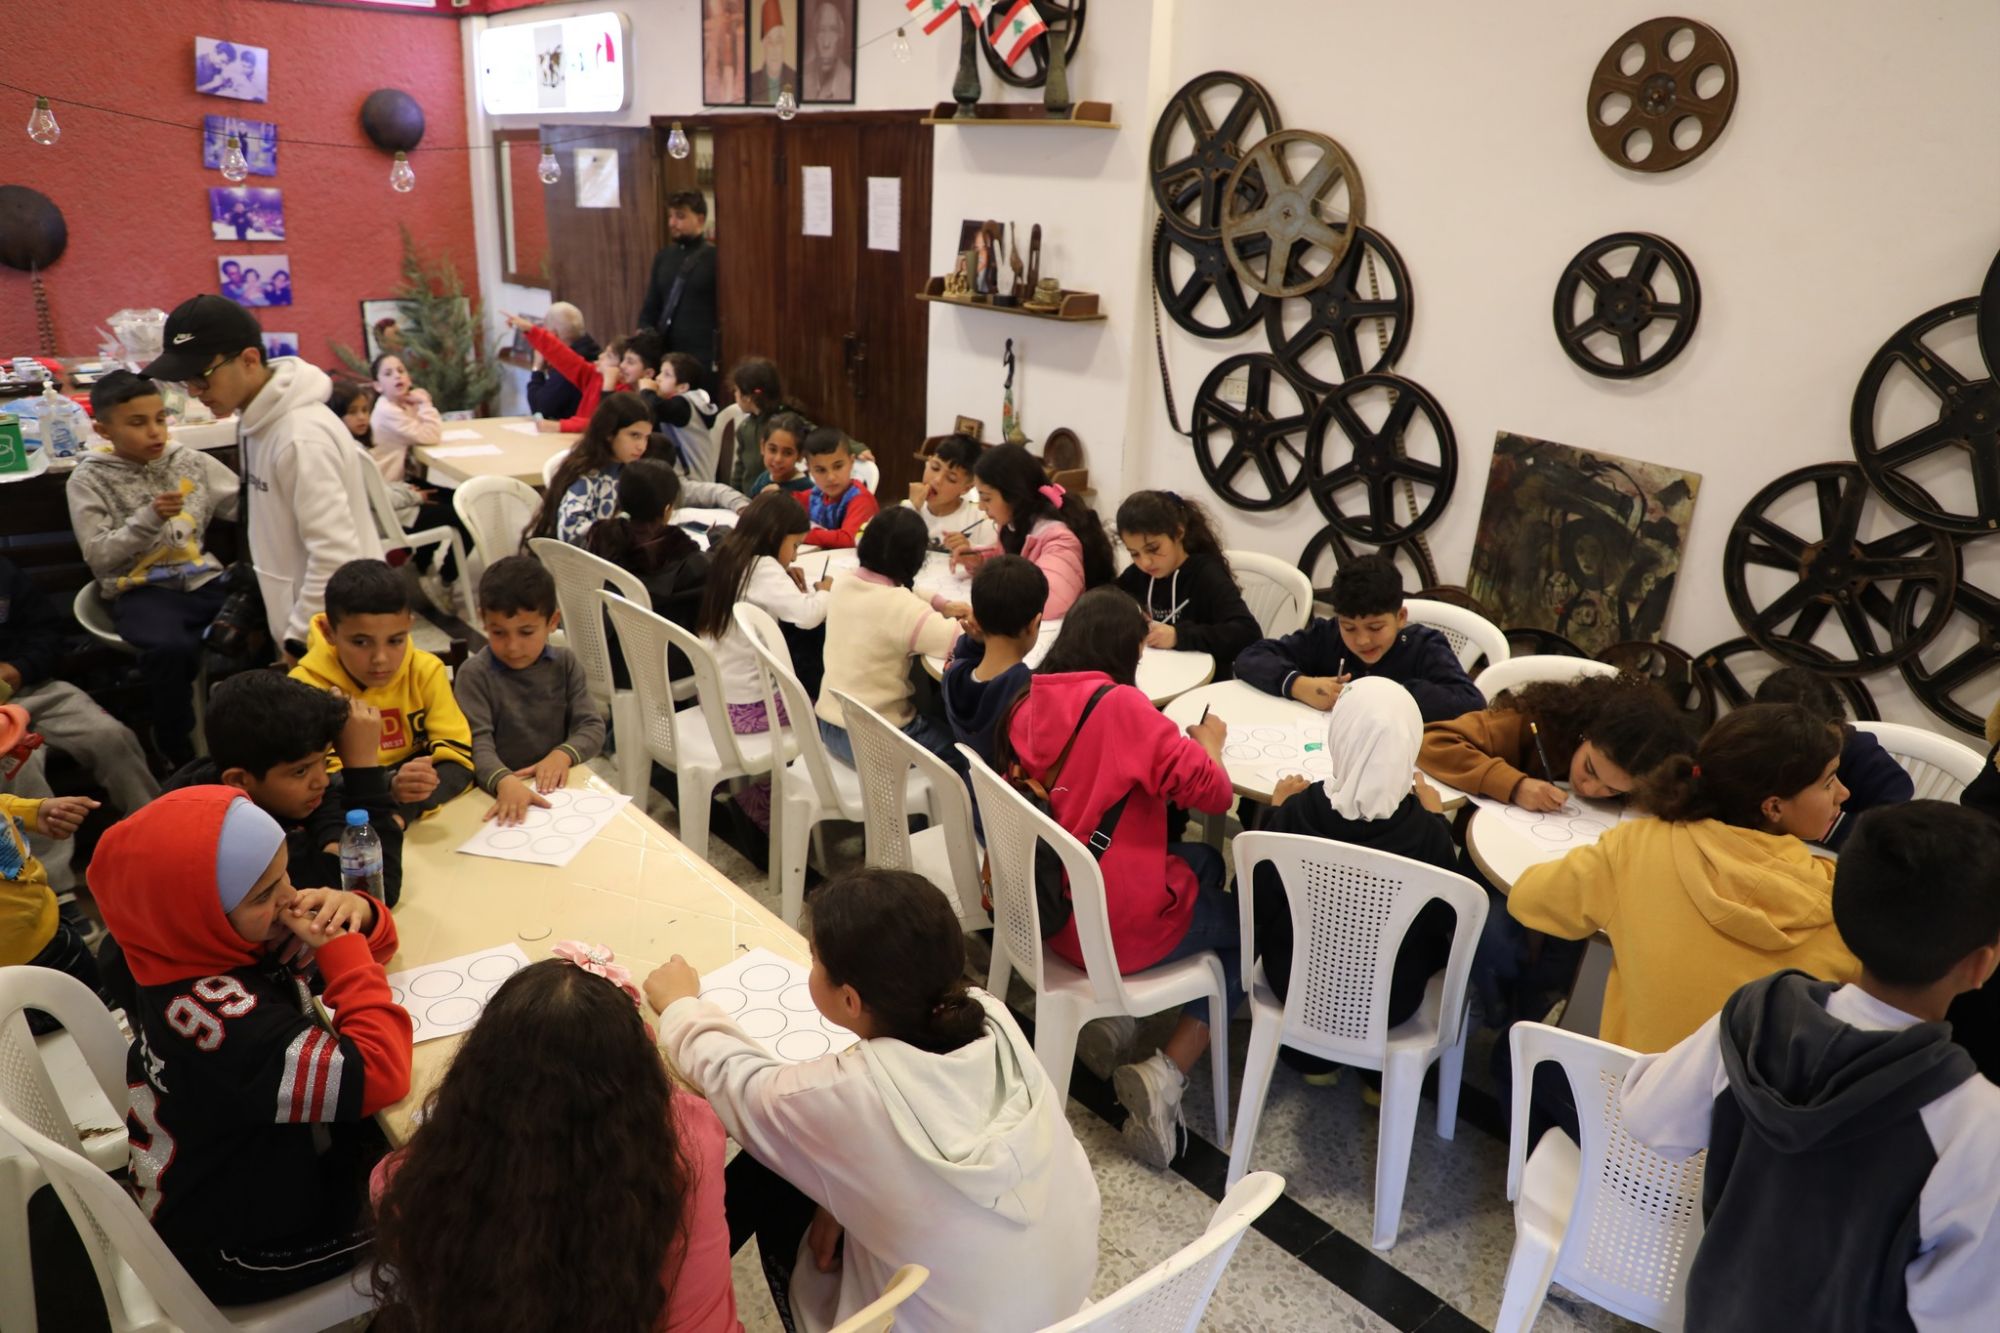 D8AAD8AFD8B1D98AD8A8D8A7D8AAD984D984D8A3D8B7D981D8A7D984D988D8A7D984D8B4D8A8D8A7D8A8D8A7D984D986D8A7D8B2D8ADD98AD986D985D986D8A7D984D8ADD8B1D8A8D981D98AD984D8A8D986D8A7D986283298445672841375983922 جمعية تيرو للفنون تنظم تدريبات للأطفال النازحين من الحرب في المسرح الوطني اللبناني صور